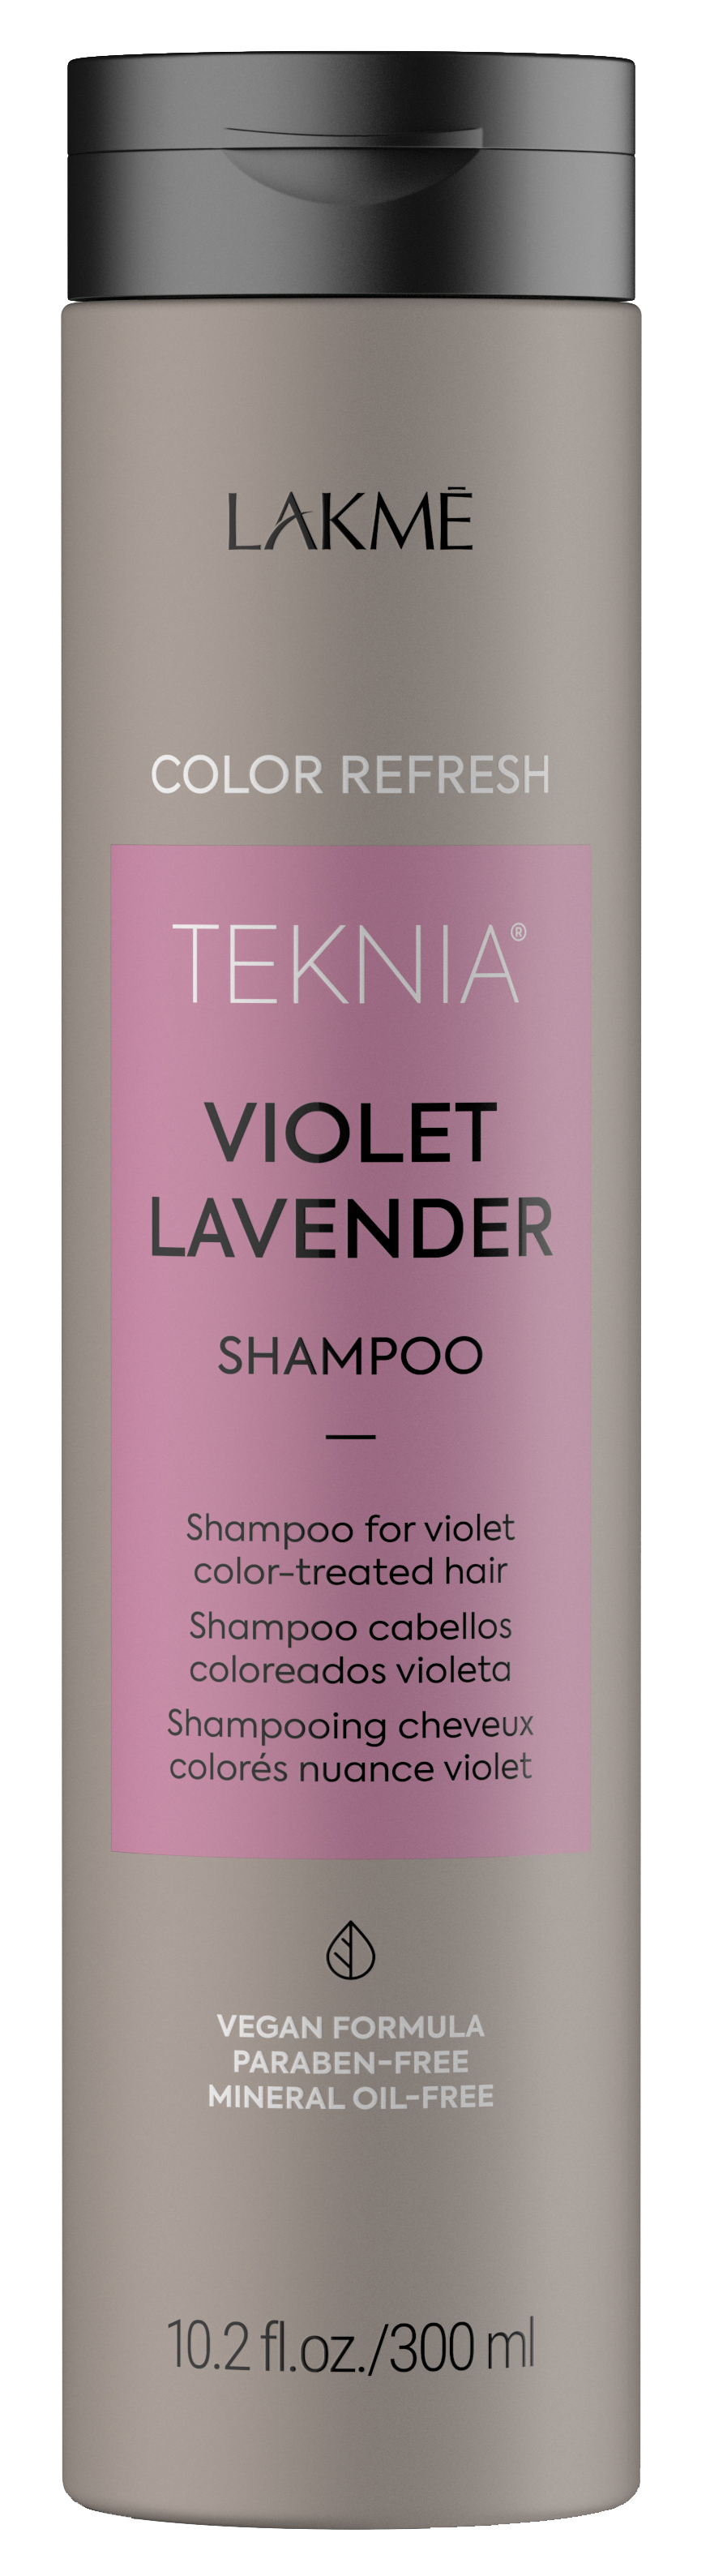 LAKME Шампунь для обновления цвета фиолетовых оттенков волос